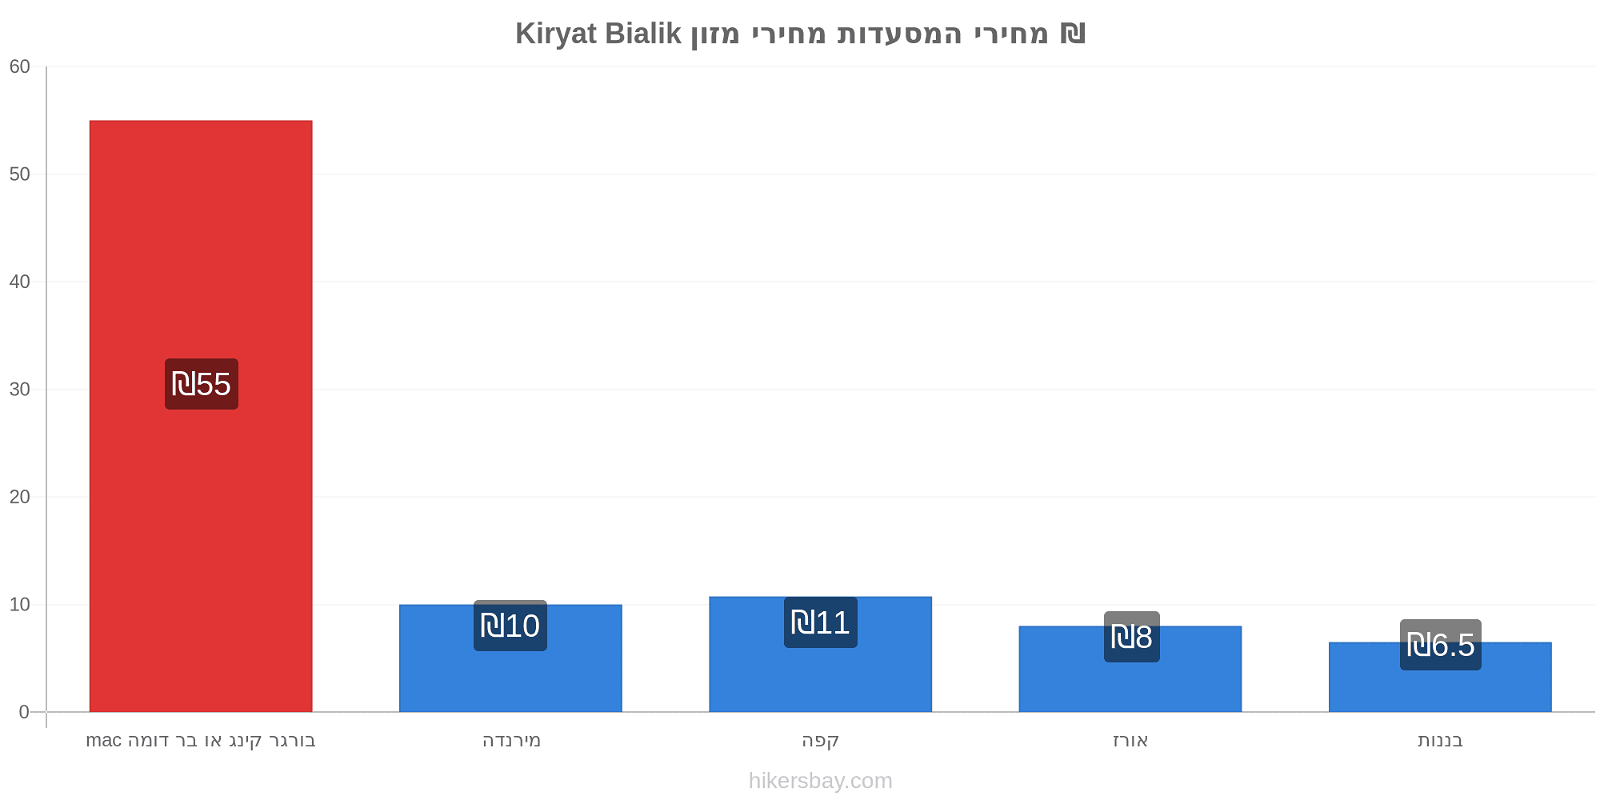 Kiryat Bialik שינויי מחיר hikersbay.com